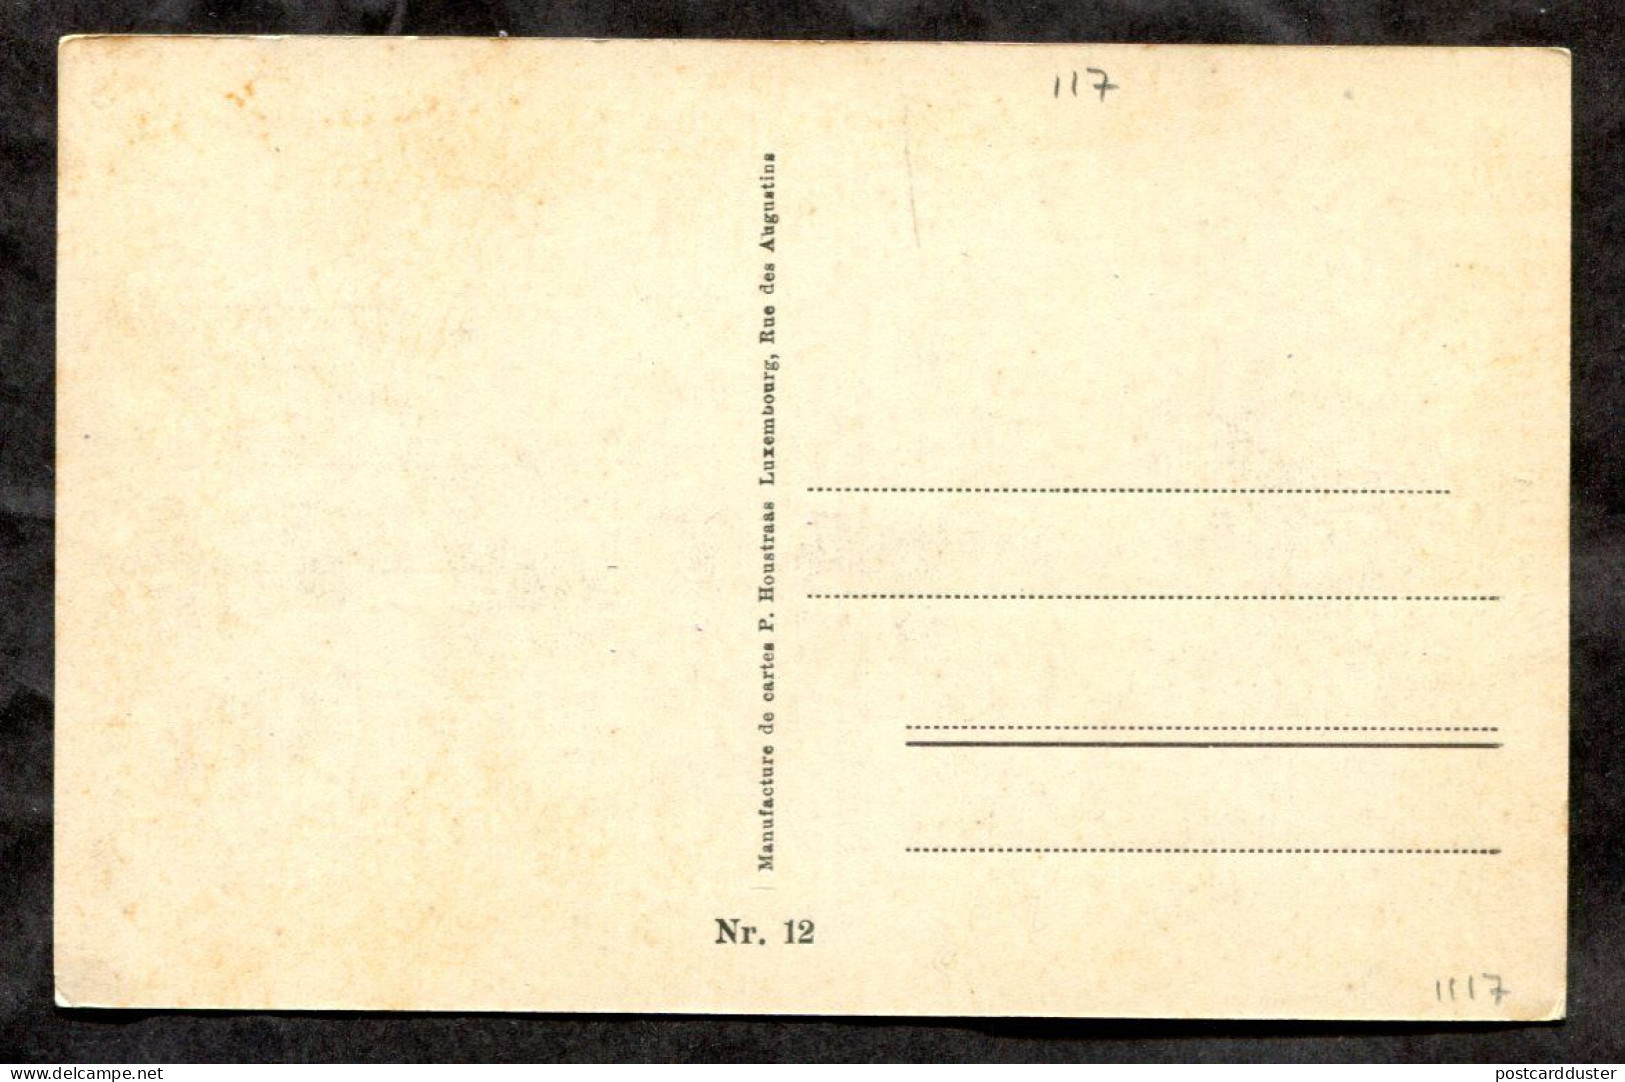 VIANDEN Luxembourg 1920s Postcard (h857) - Vianden